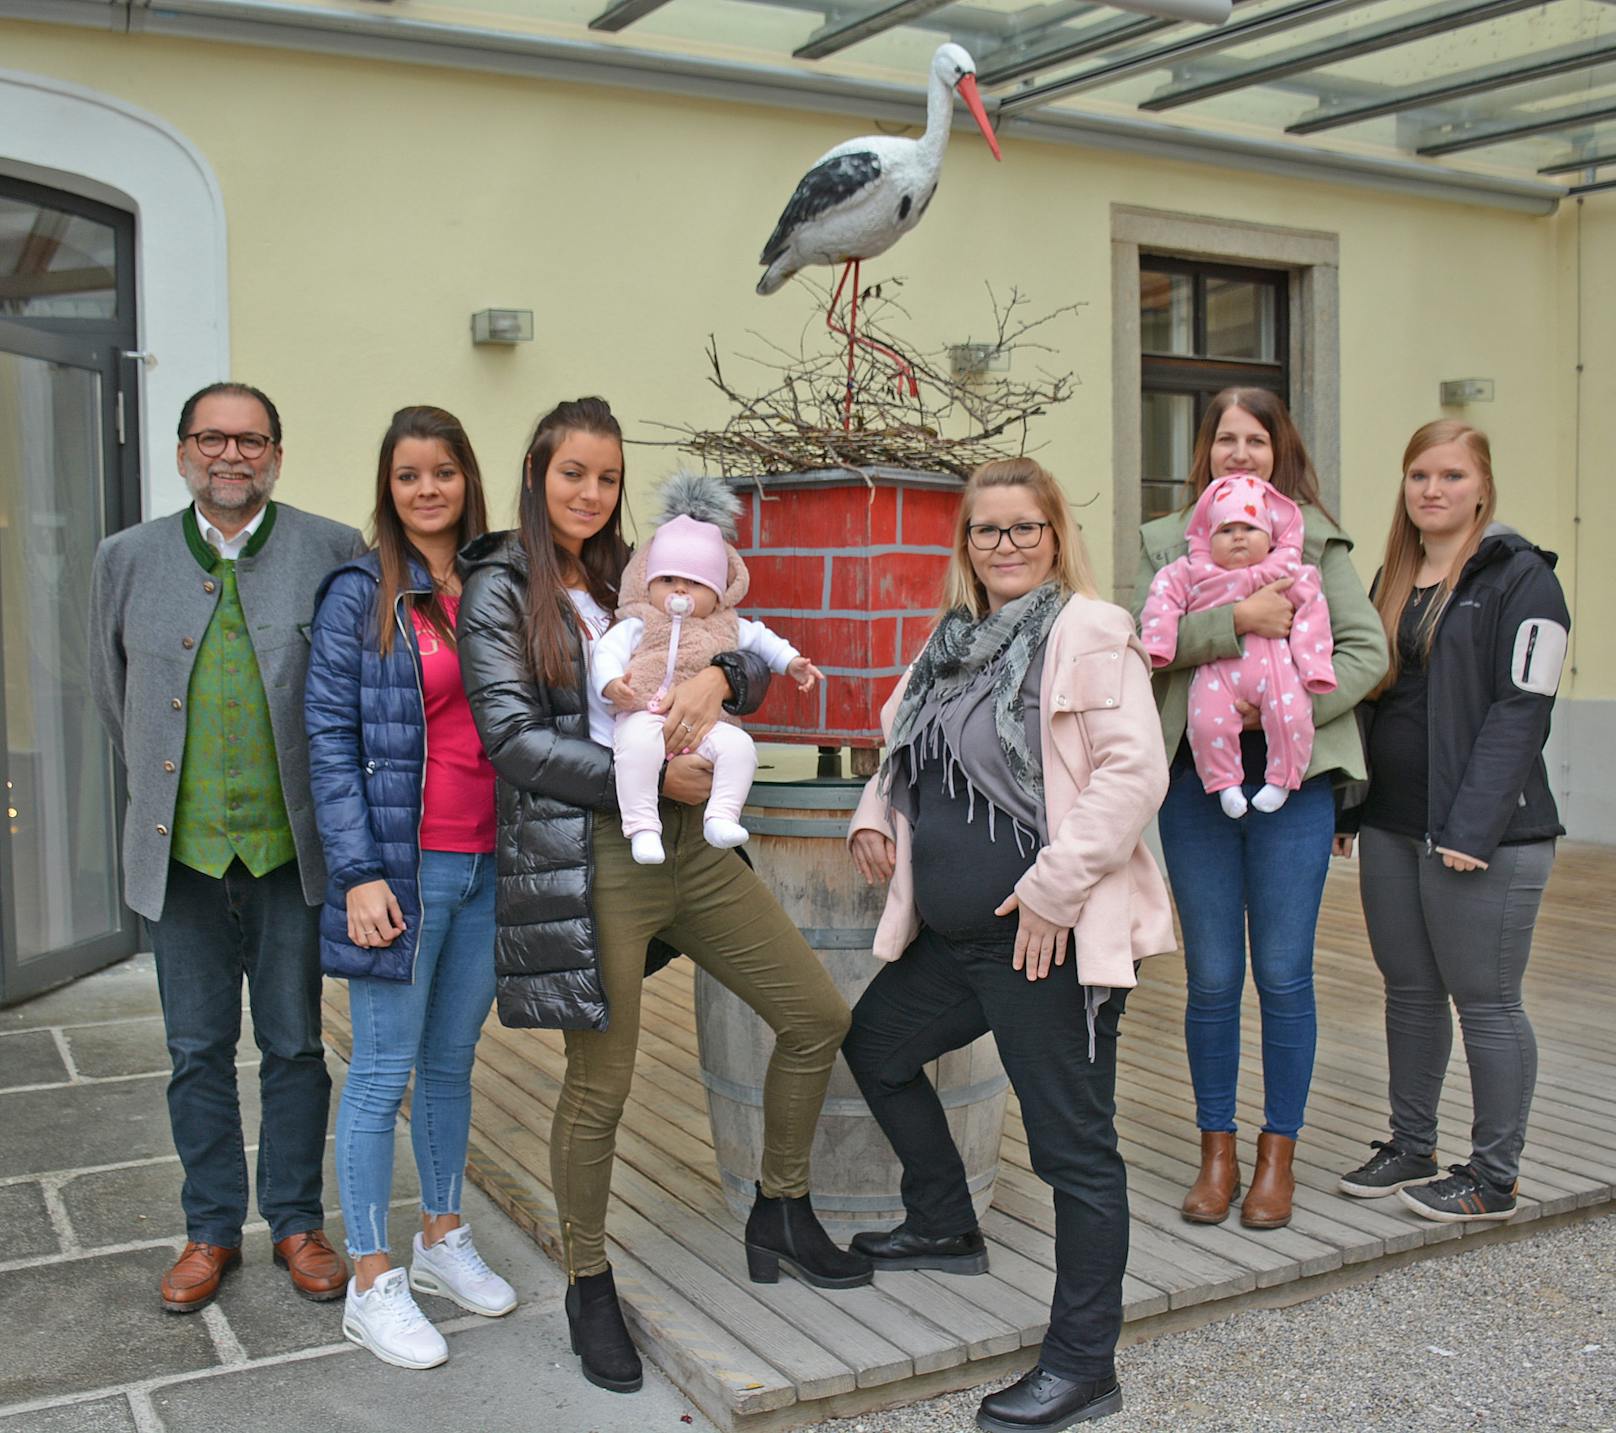 Brauhaus Wirt Helmut Satzinger mit seinen Kellnerinnen (v.l.) Monica, Luzie mit Baby Amelly, Silvia, Nadine mit Baby Leonie und Kerstin.